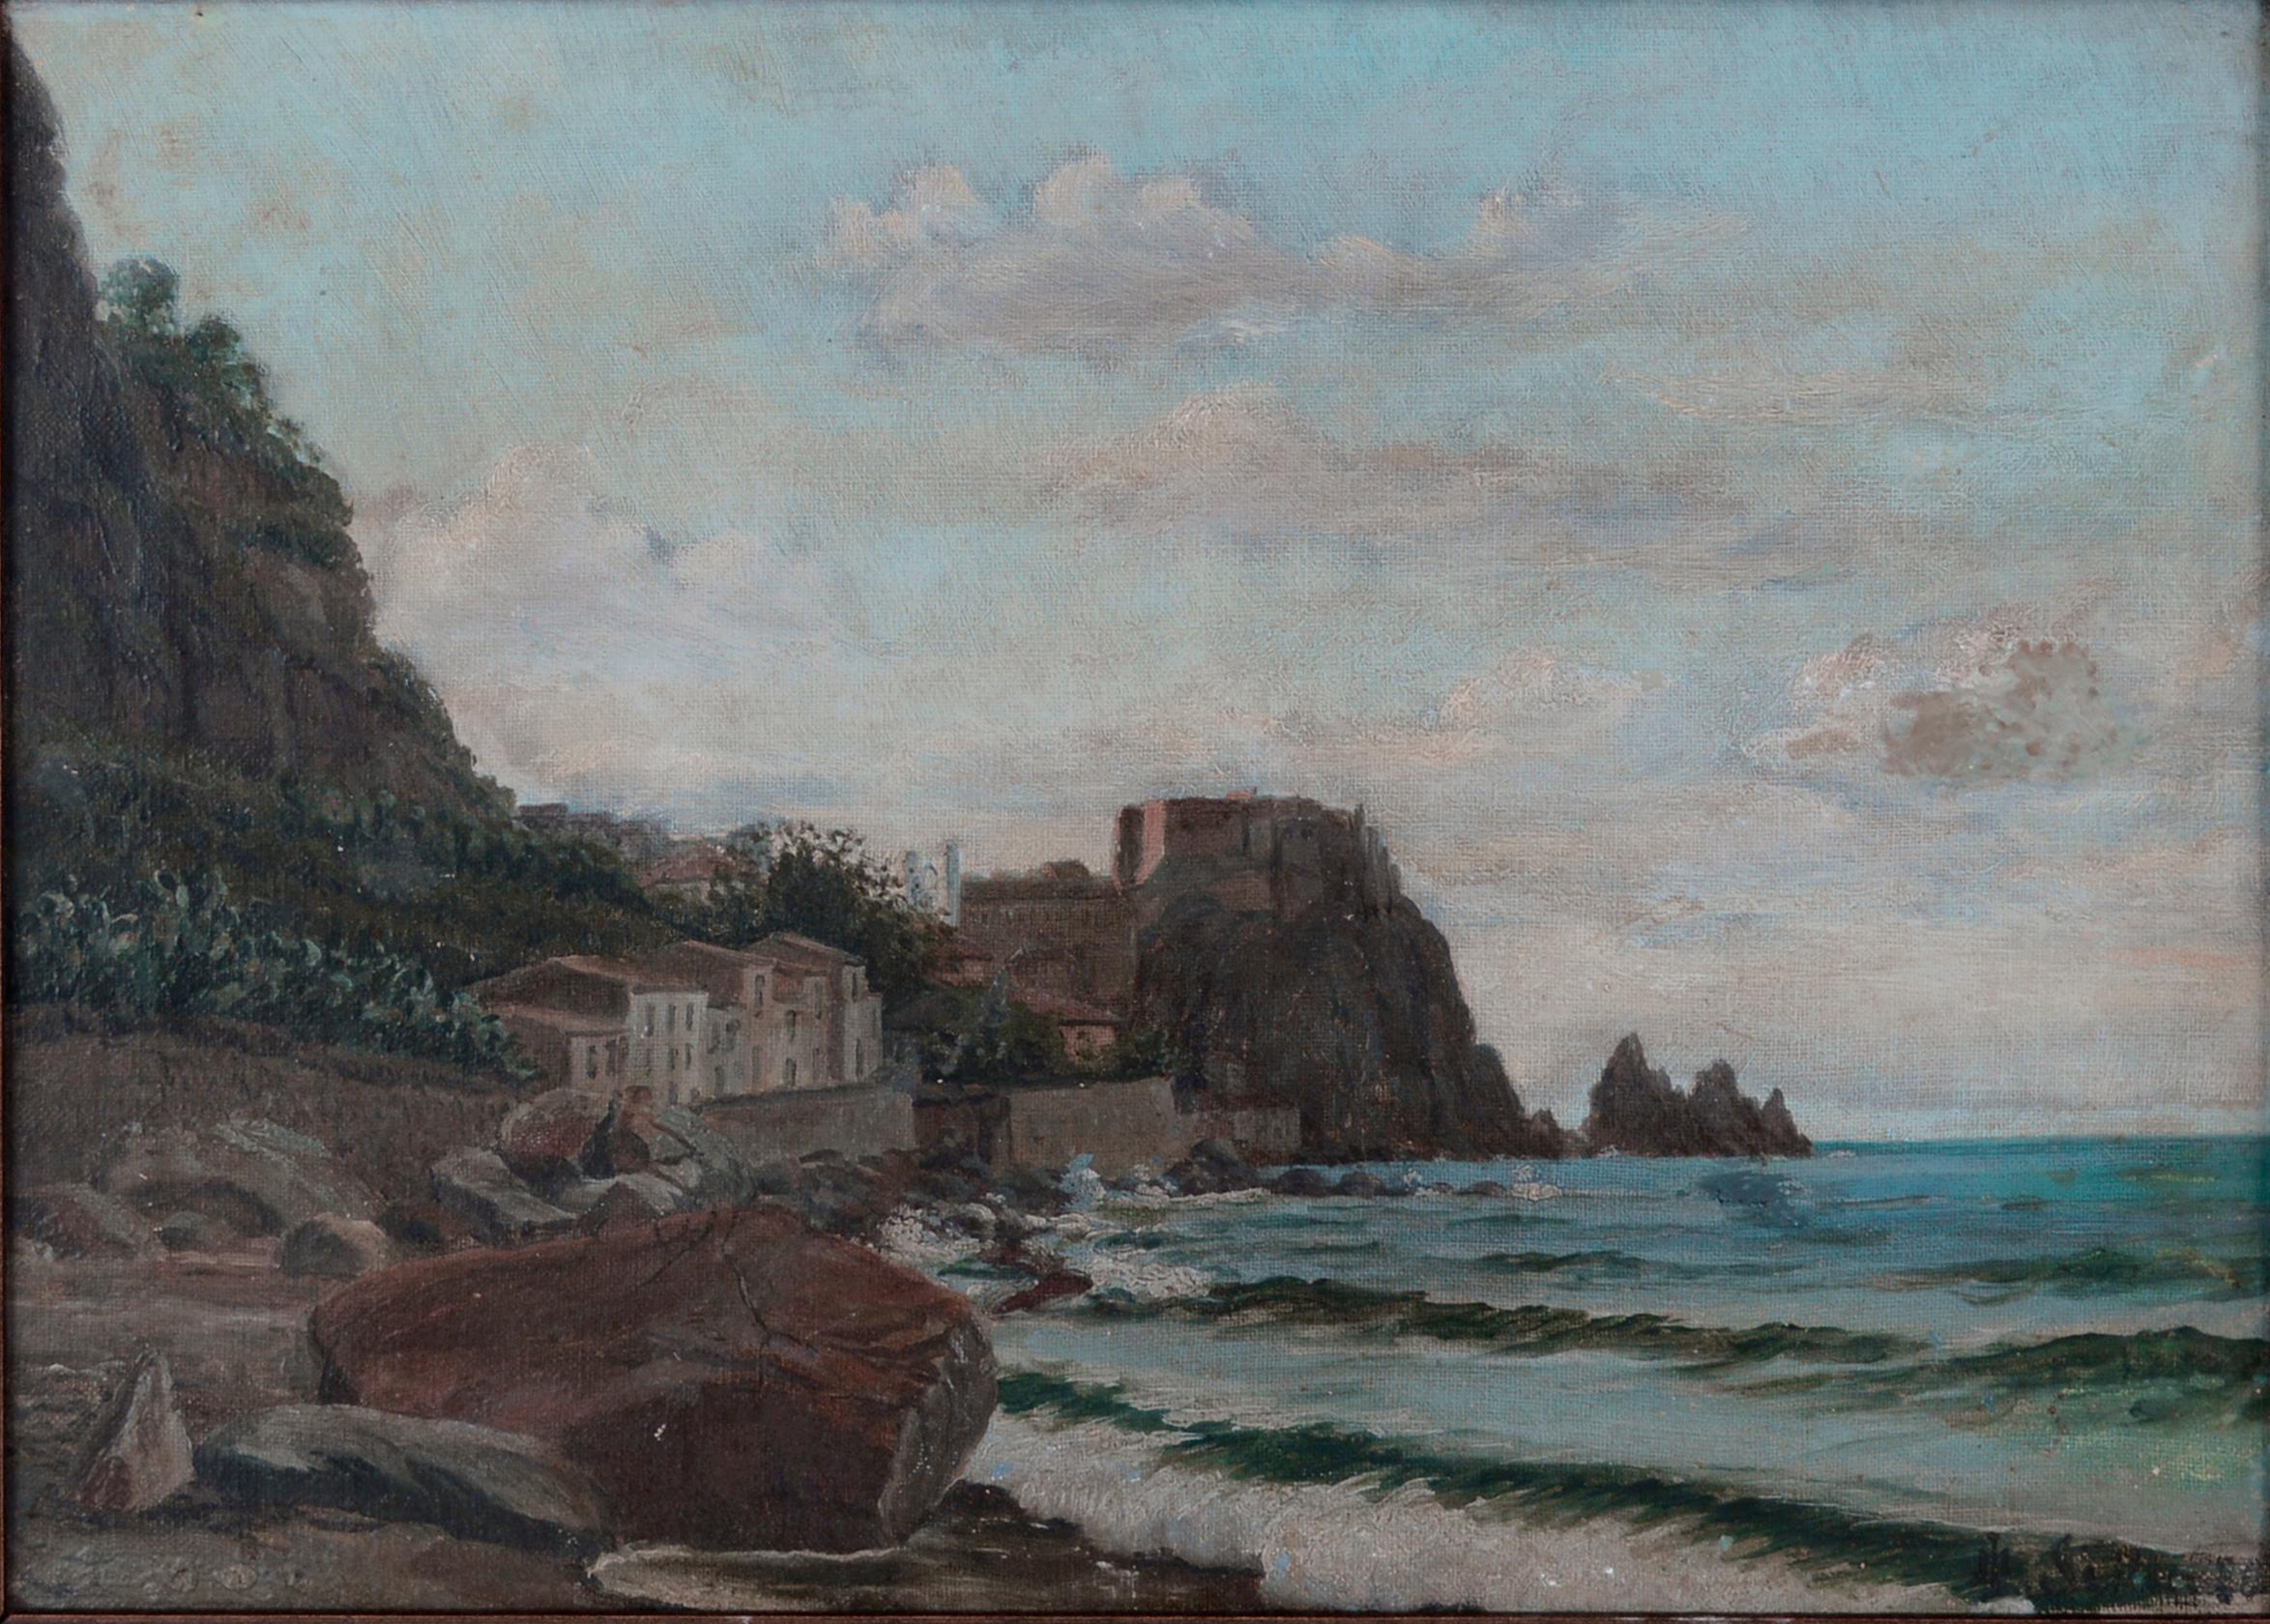 Sur la côte et le village norvégien vers 1900 - Painting de Unknown